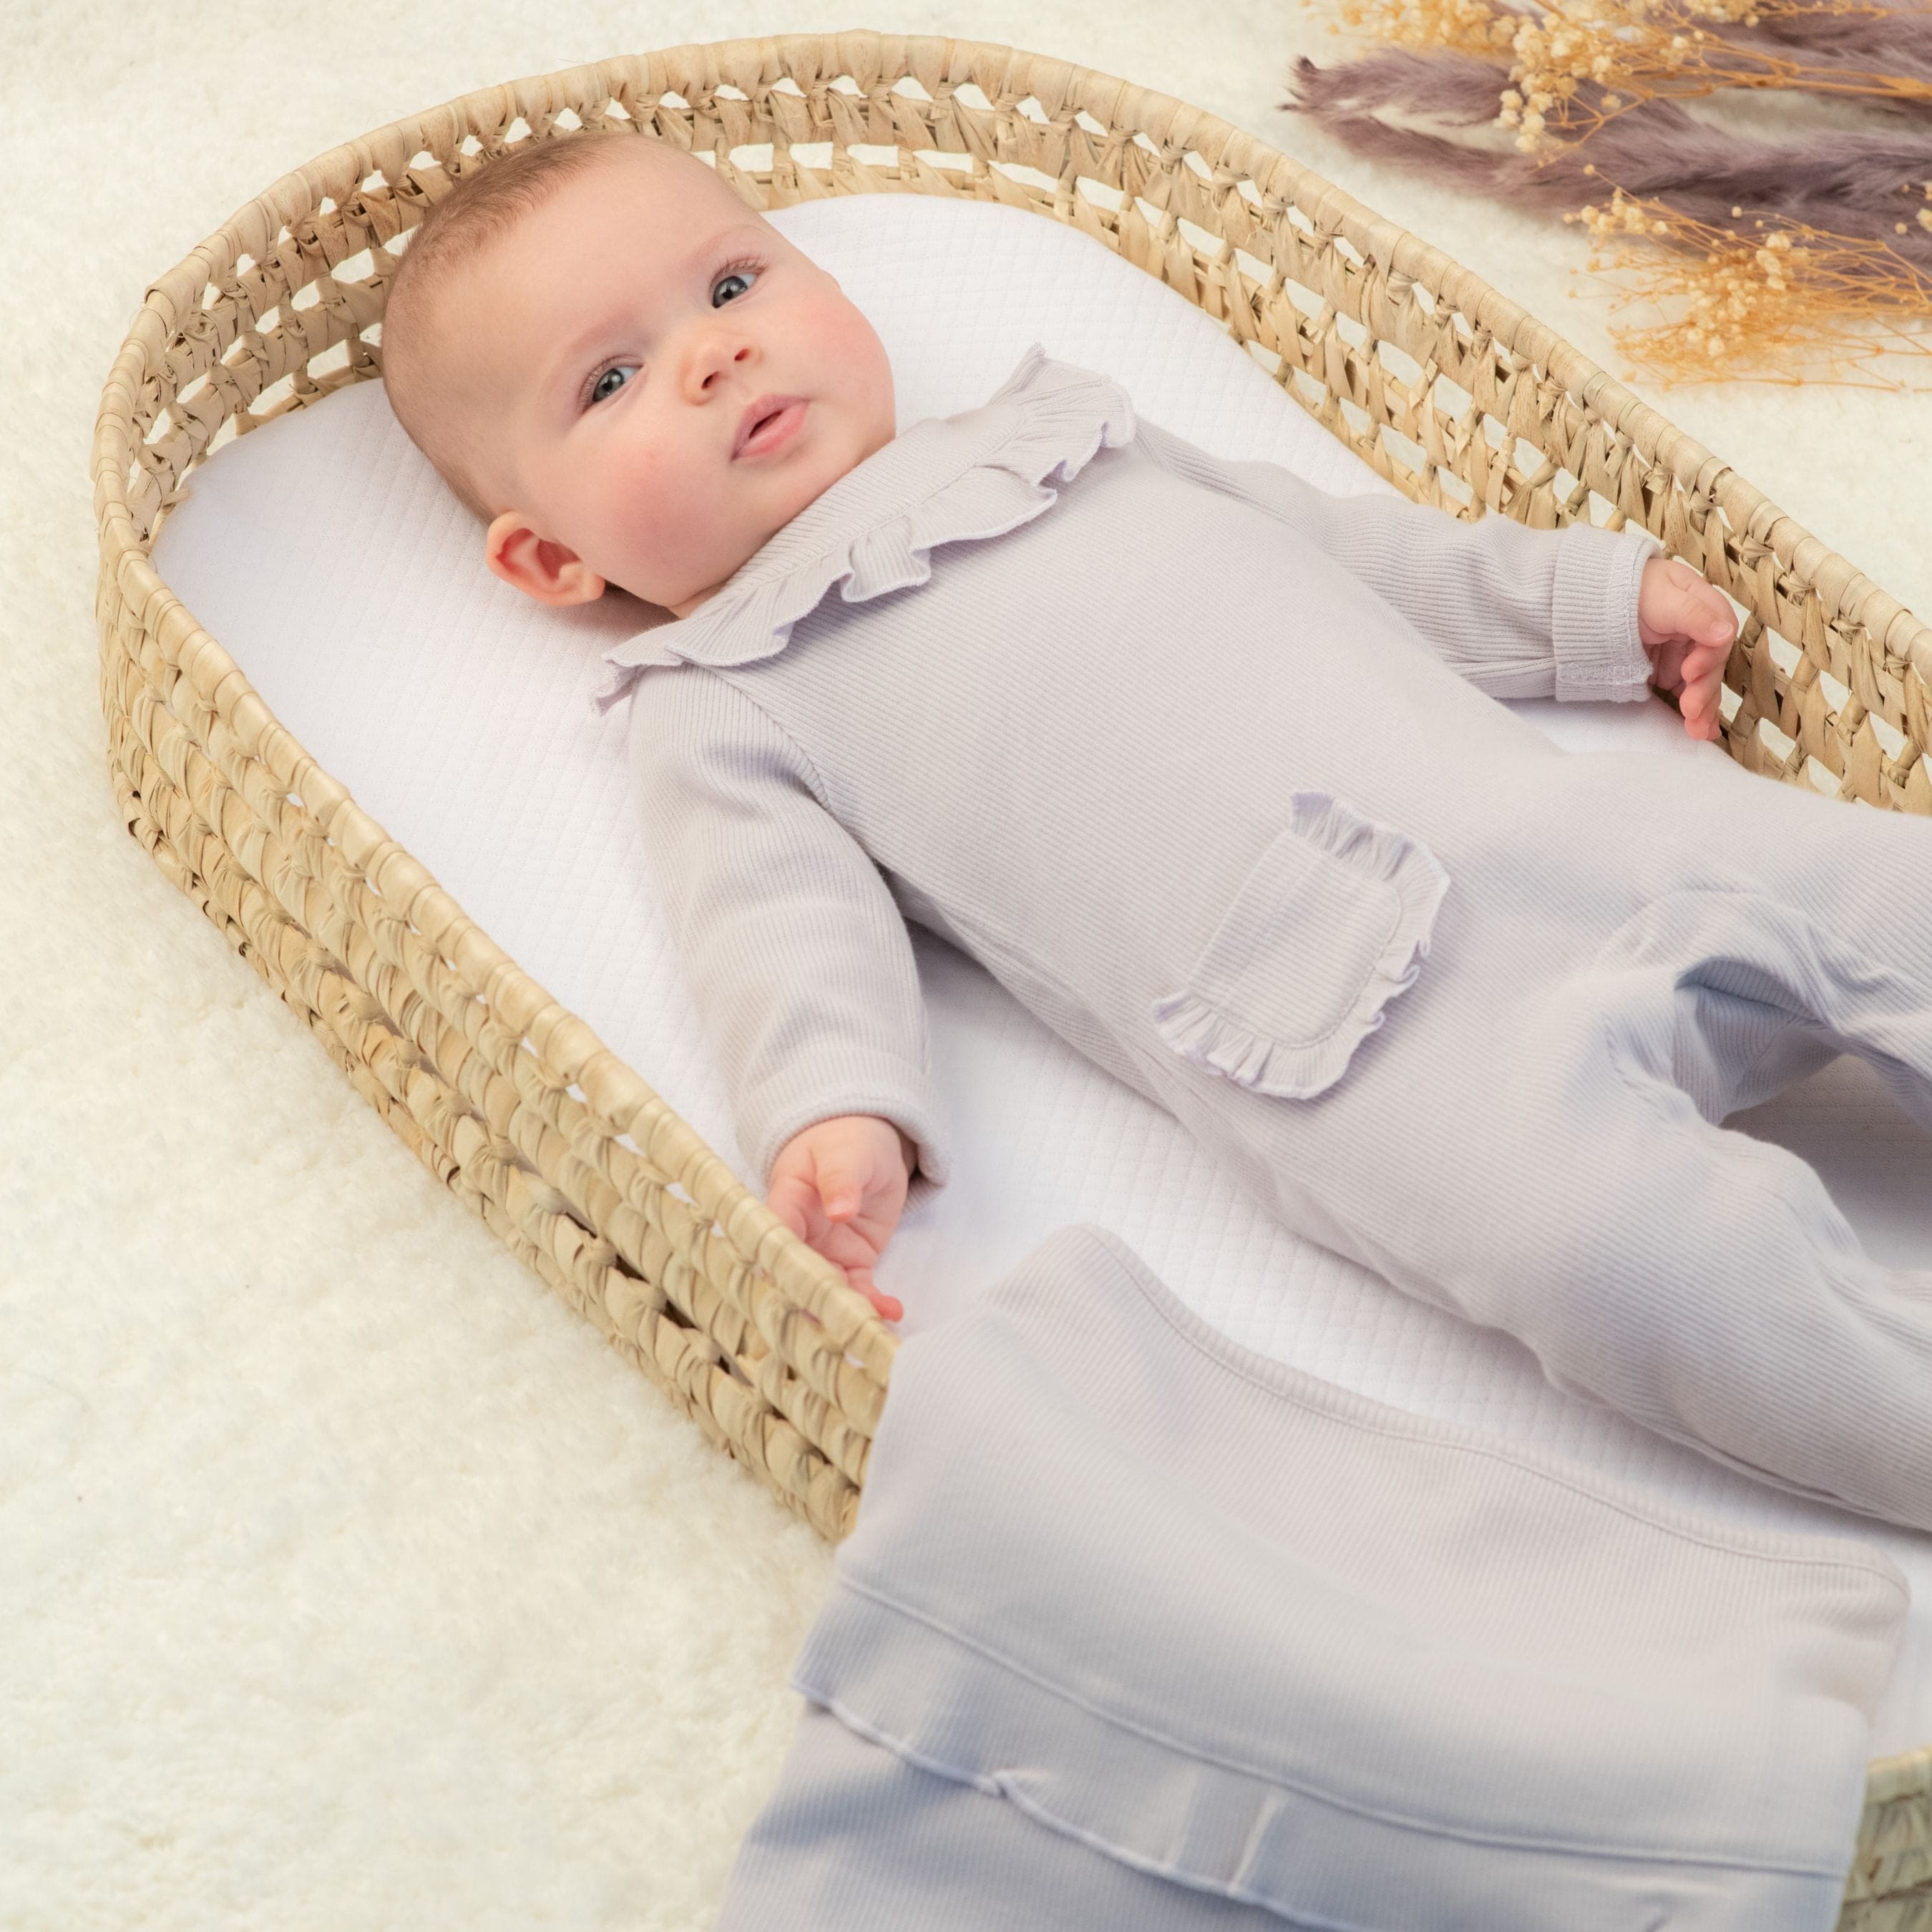 Emilia | Baby Girls Lilac Ribbed Cotton Babygrow Set (3)